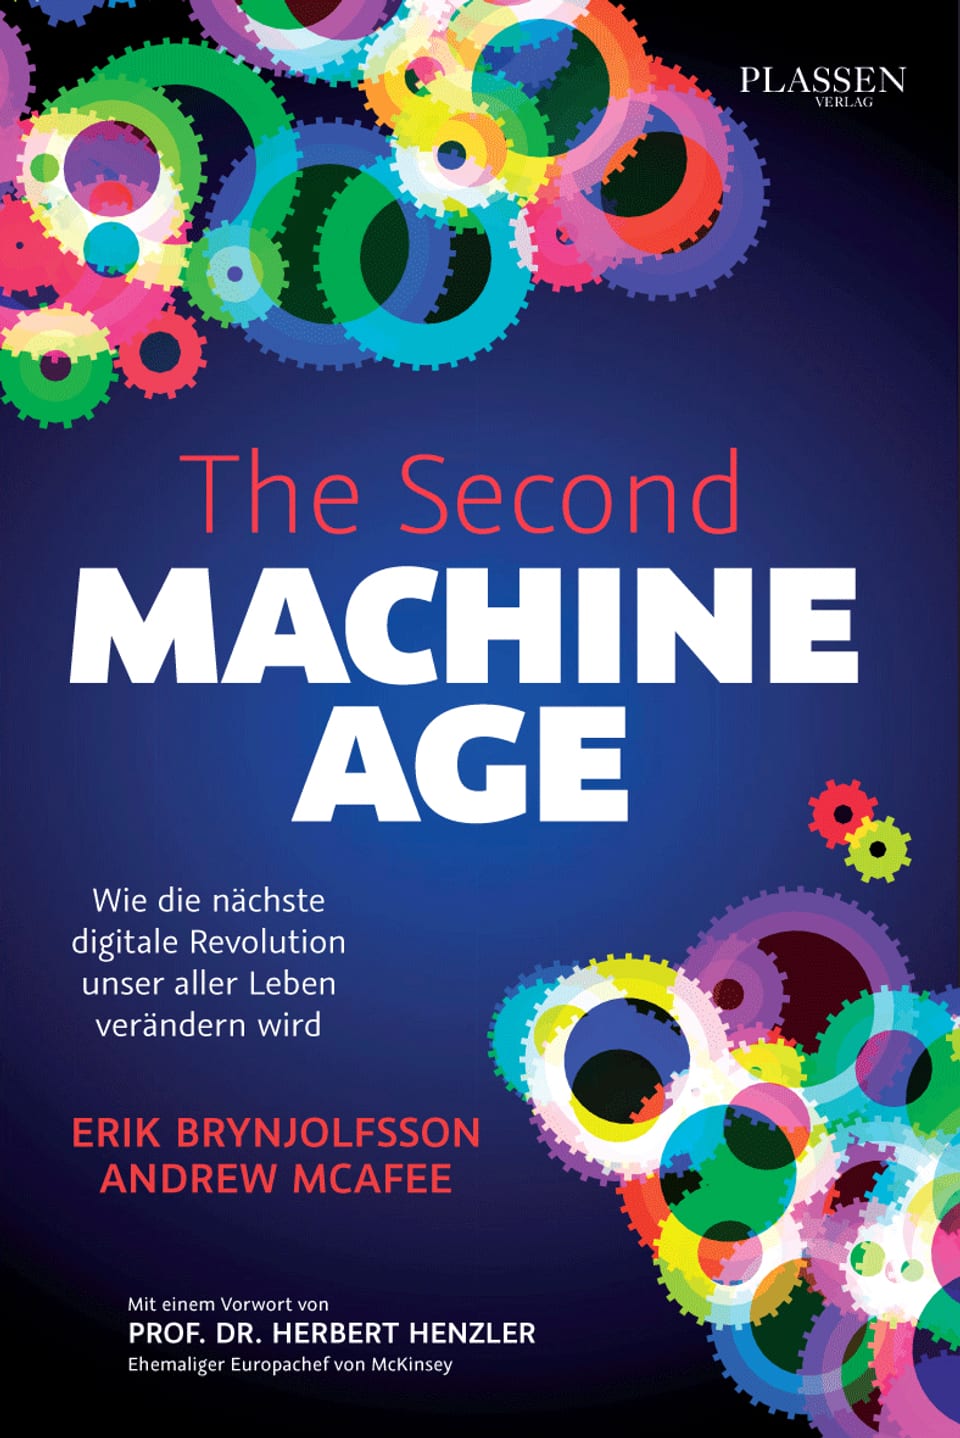 The Secon Machine Age